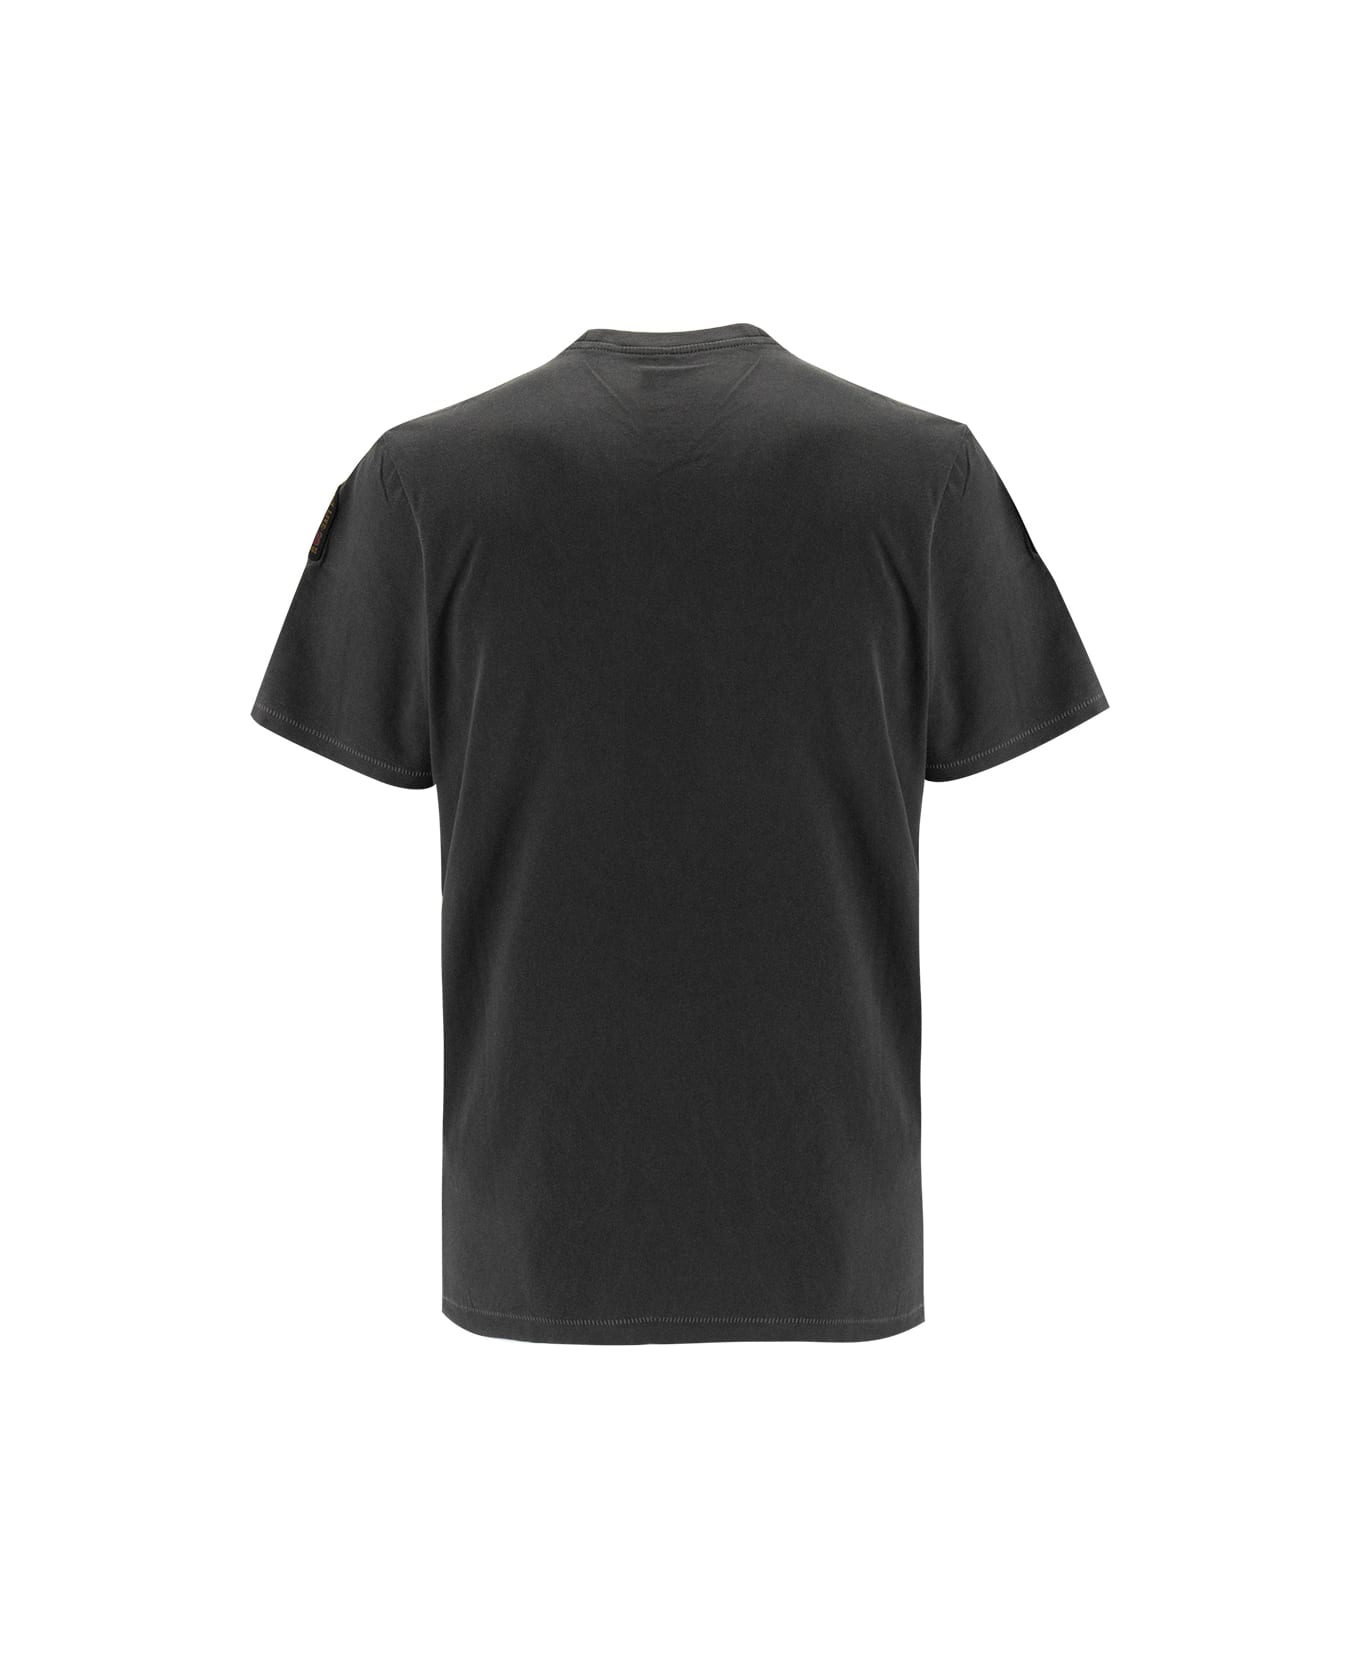 Parajumpers T-shirt - BLACK シャツ